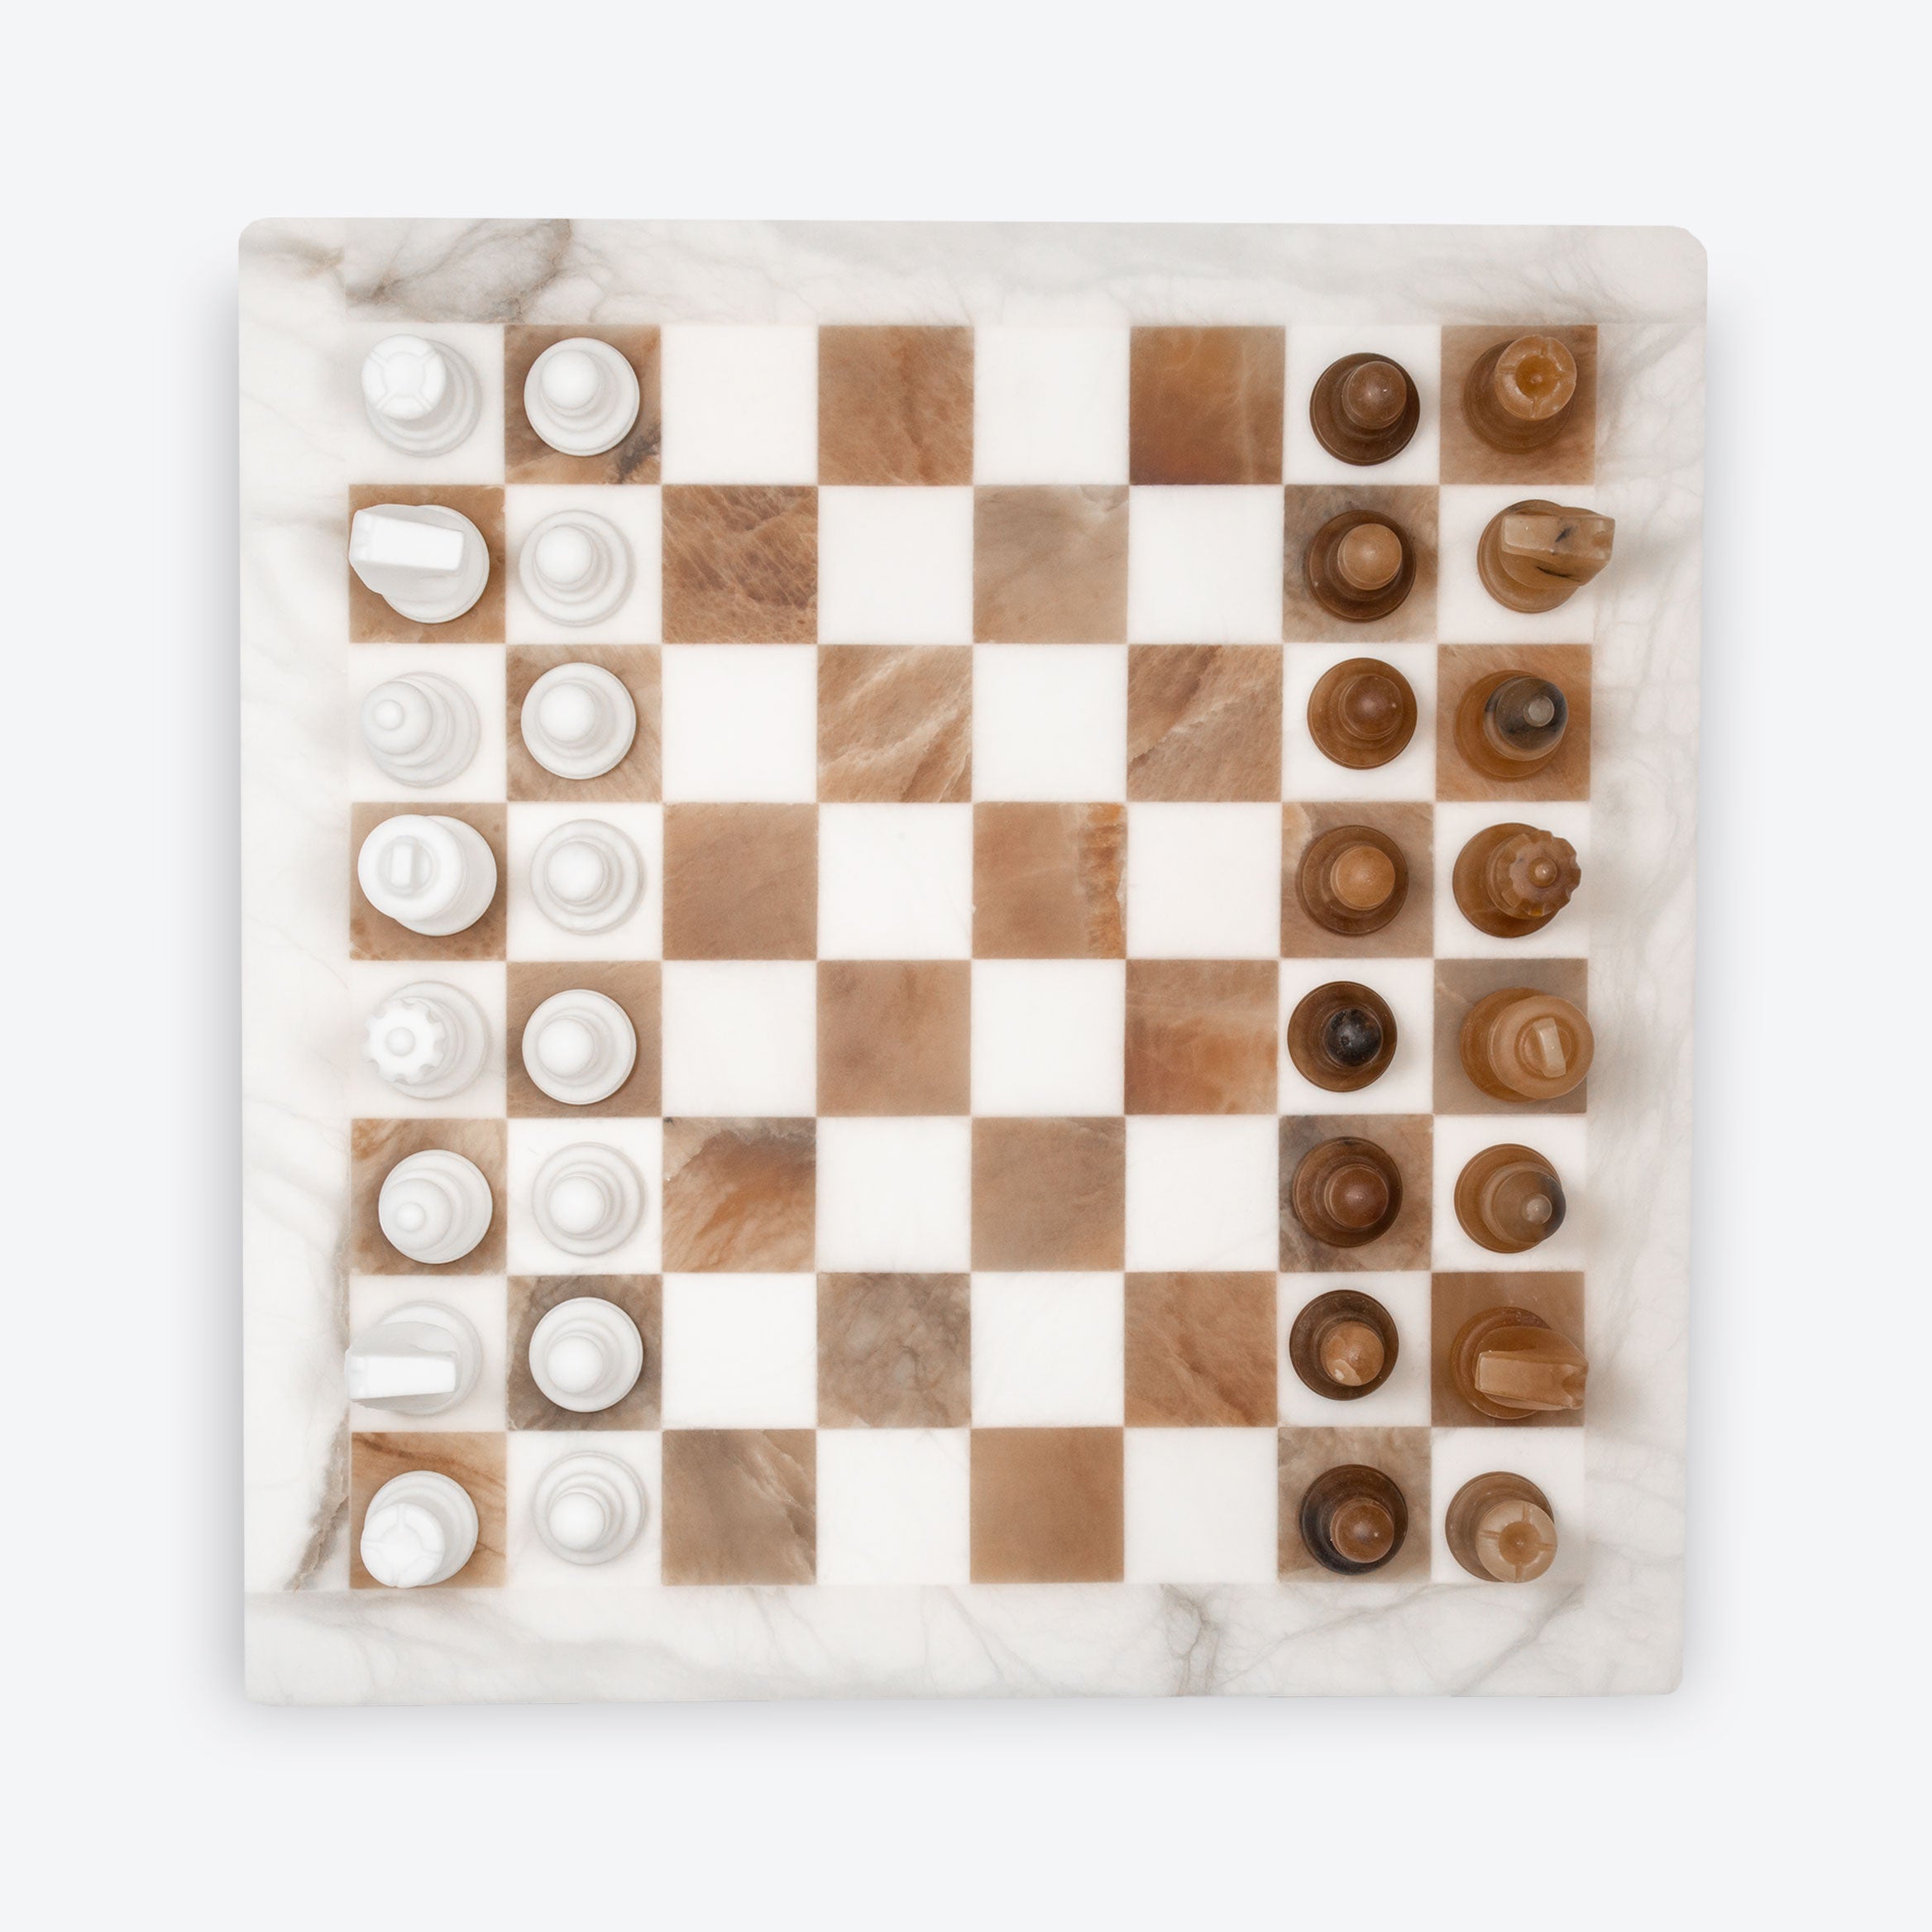 Scali Alabastro Alabaster Stone Chess Set - Nero Bruno, Gallantoro